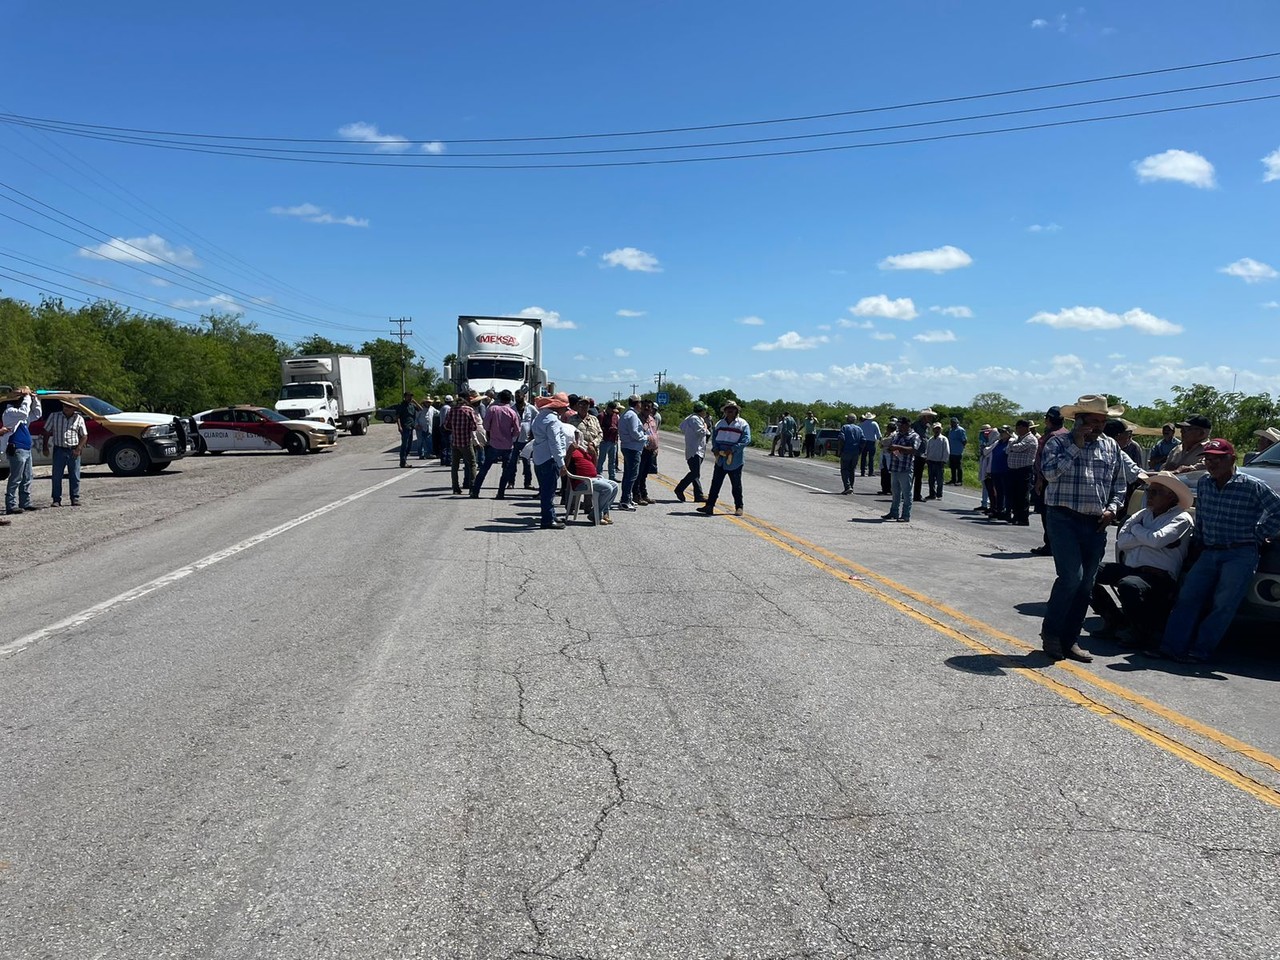 Un grupo de alrededor de cien productores de sorgo se ha congregado en la bodega Las Higuerillas en San Fernando, Tamaulipas, impidiendo el paso de vehículos de carga como parte de su protesta. Foto: SSPT